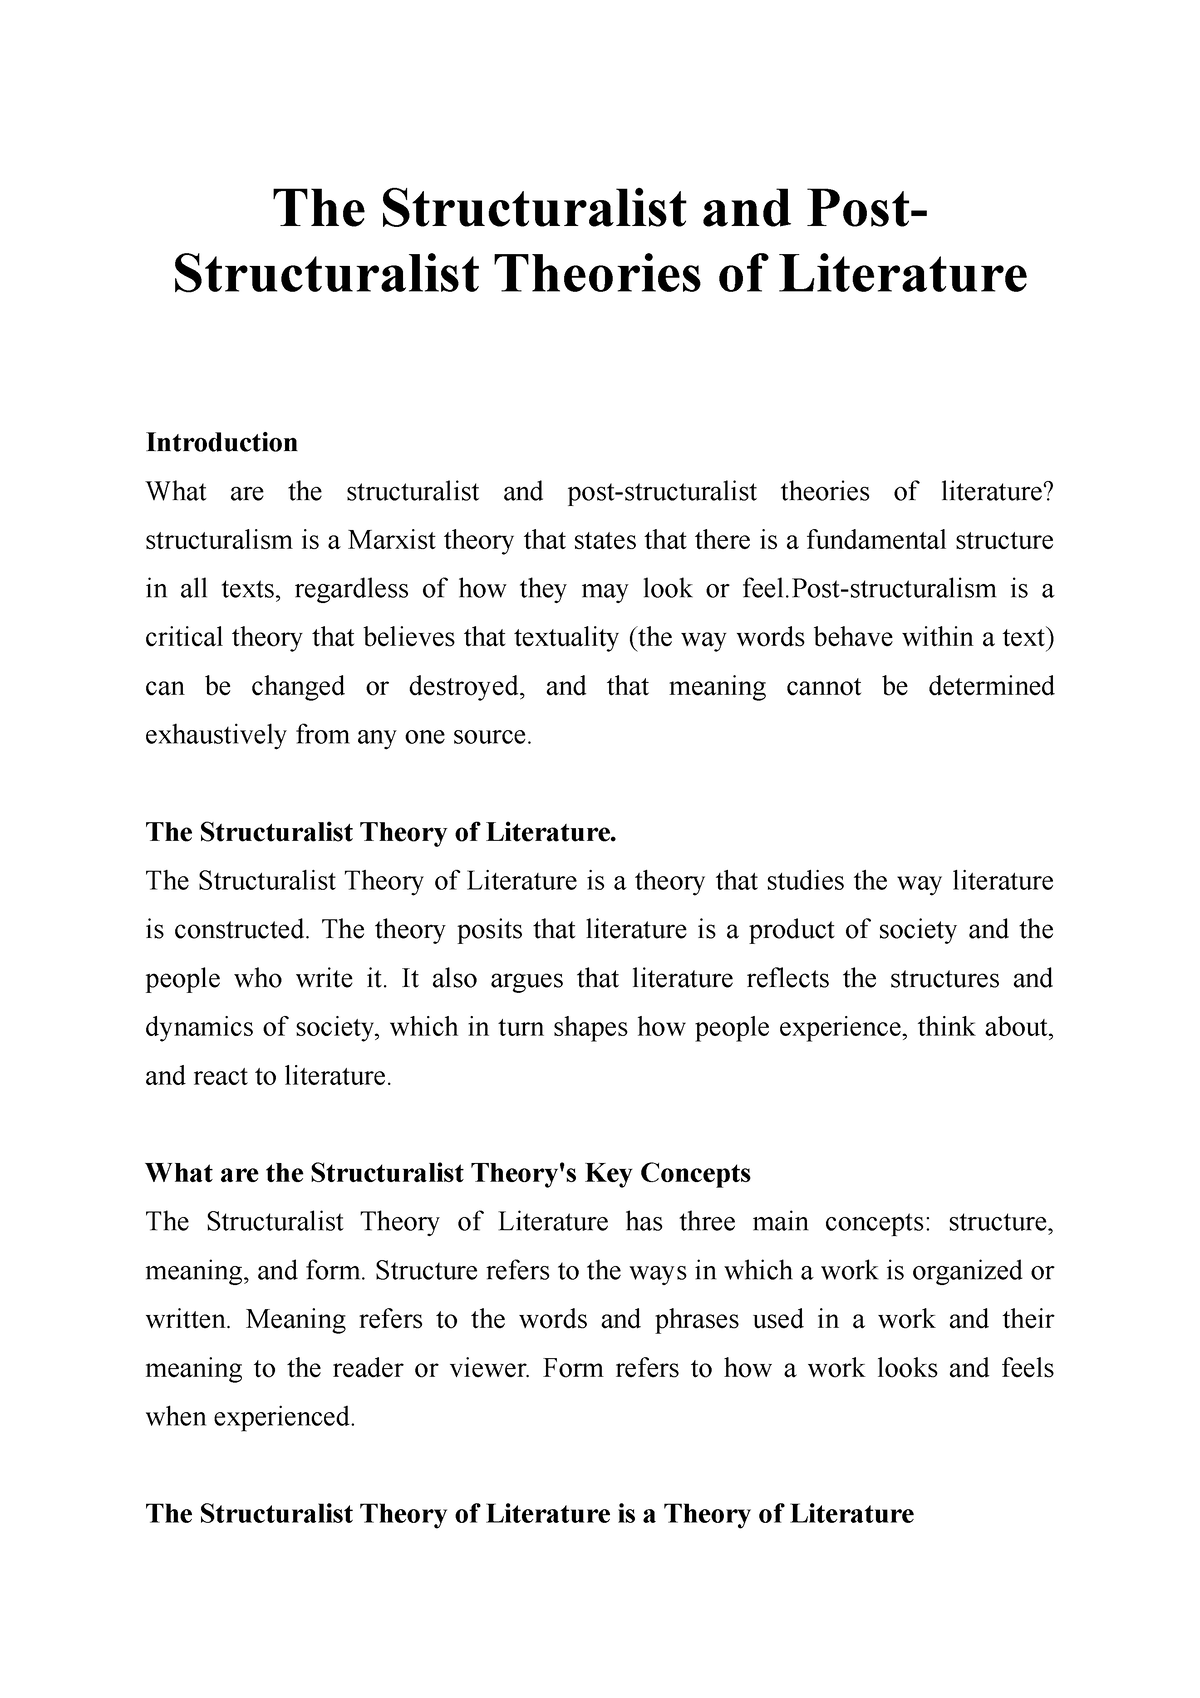 define structuralism in literature